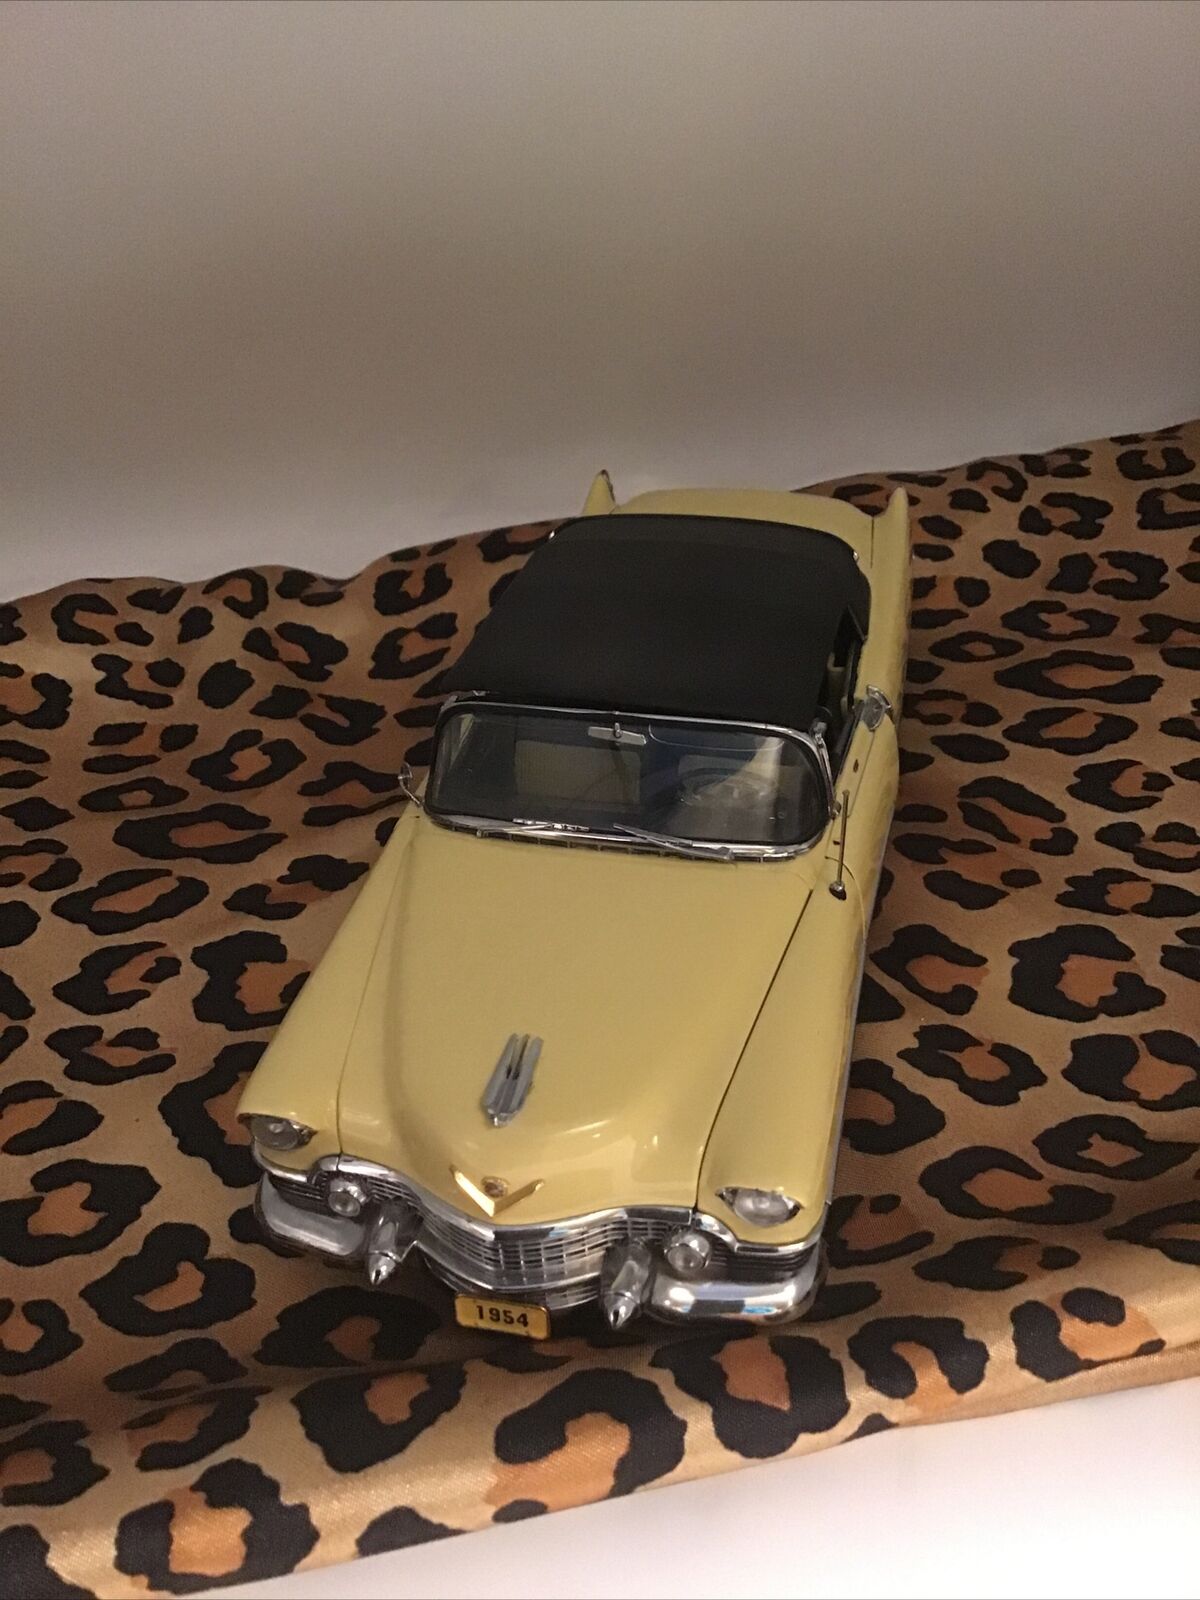 1954cadillac  eldarado convertable model car